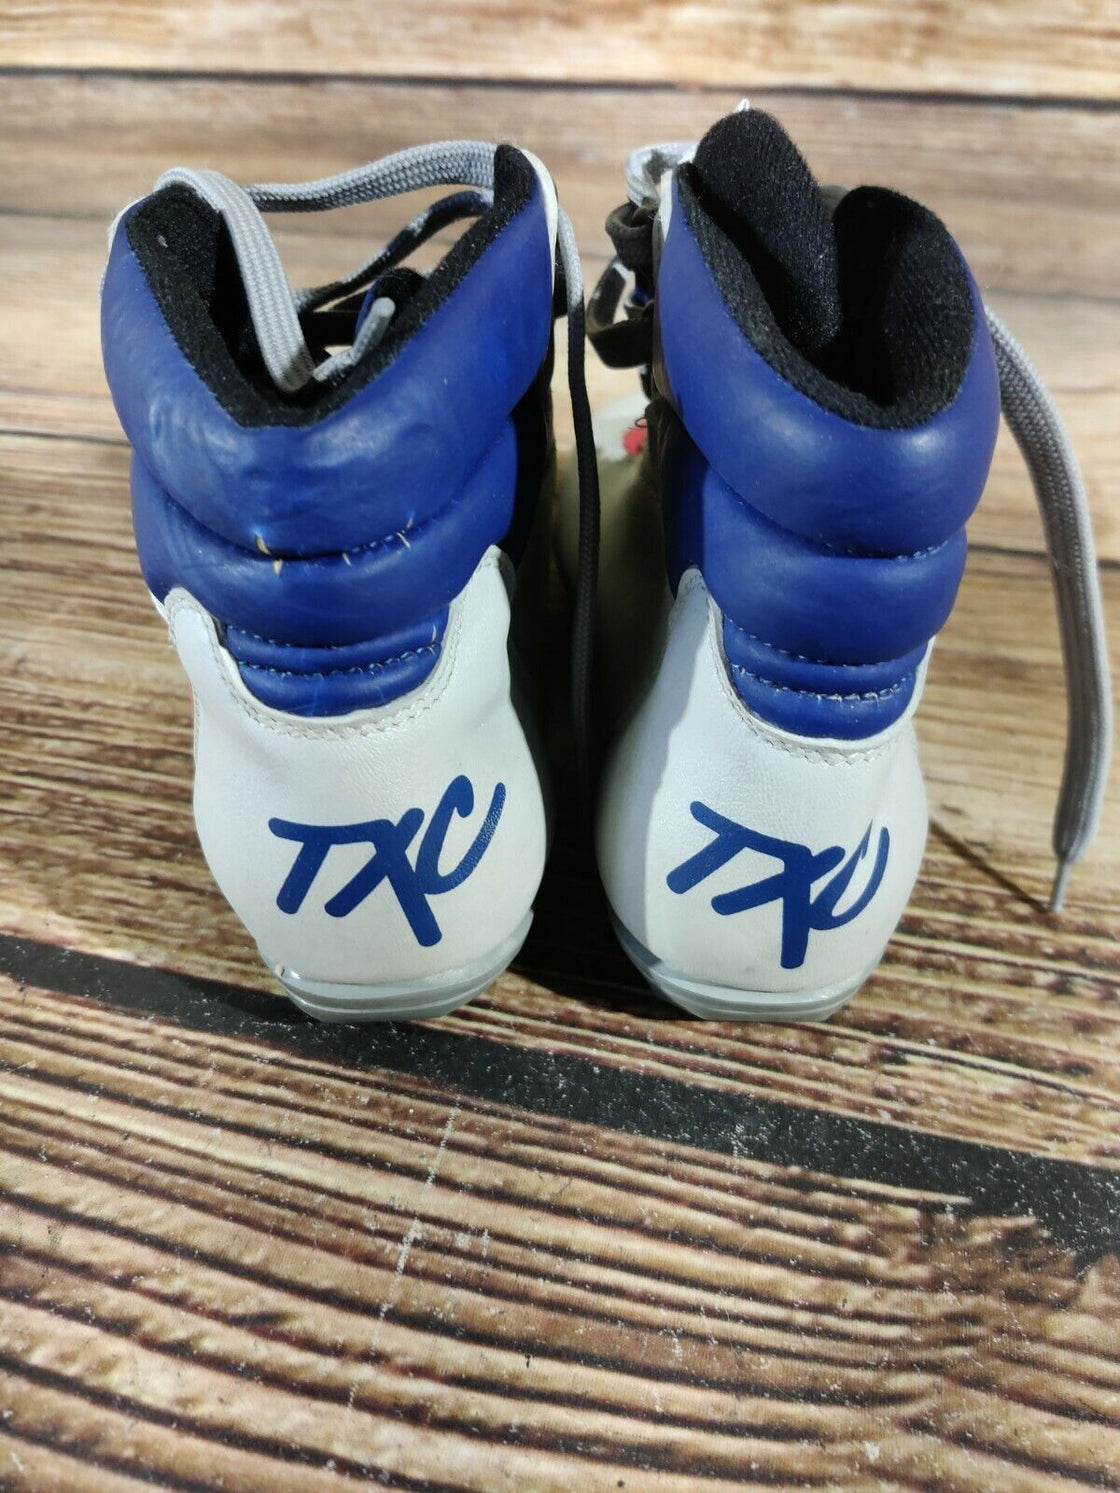 TYROLIA Cross Country Ski Boots Size EU39, US6, UK5 for TXC Bindings